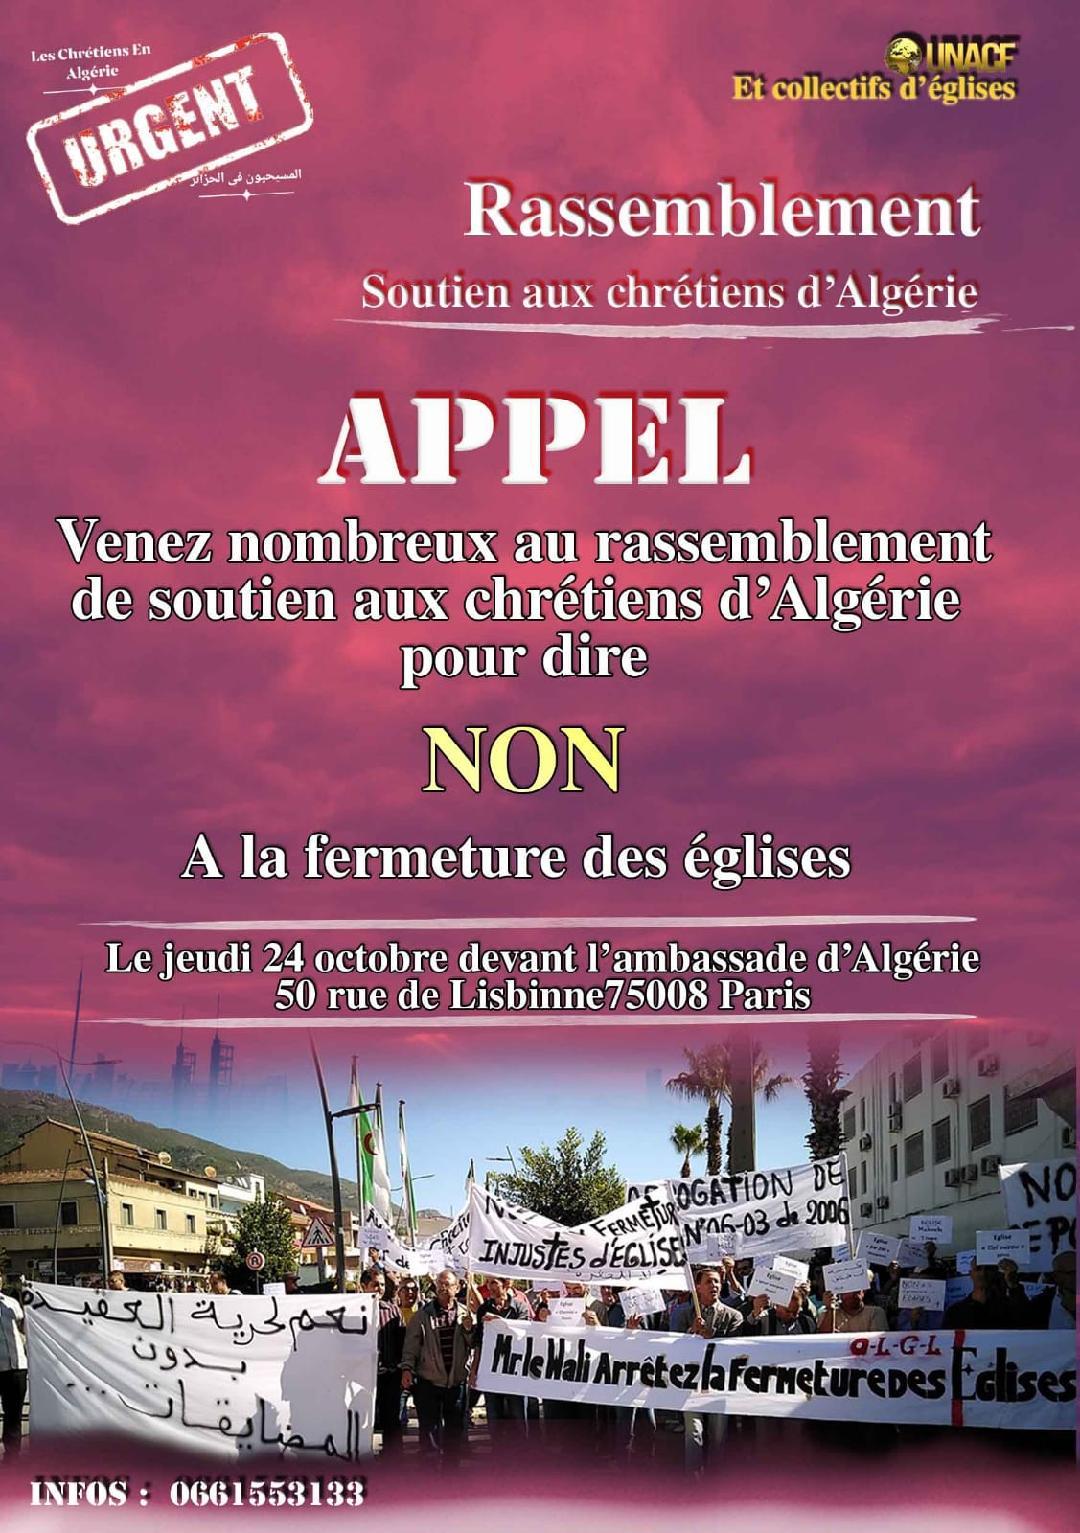 fermetures d’église en Algérie et persécution abusive des autorités